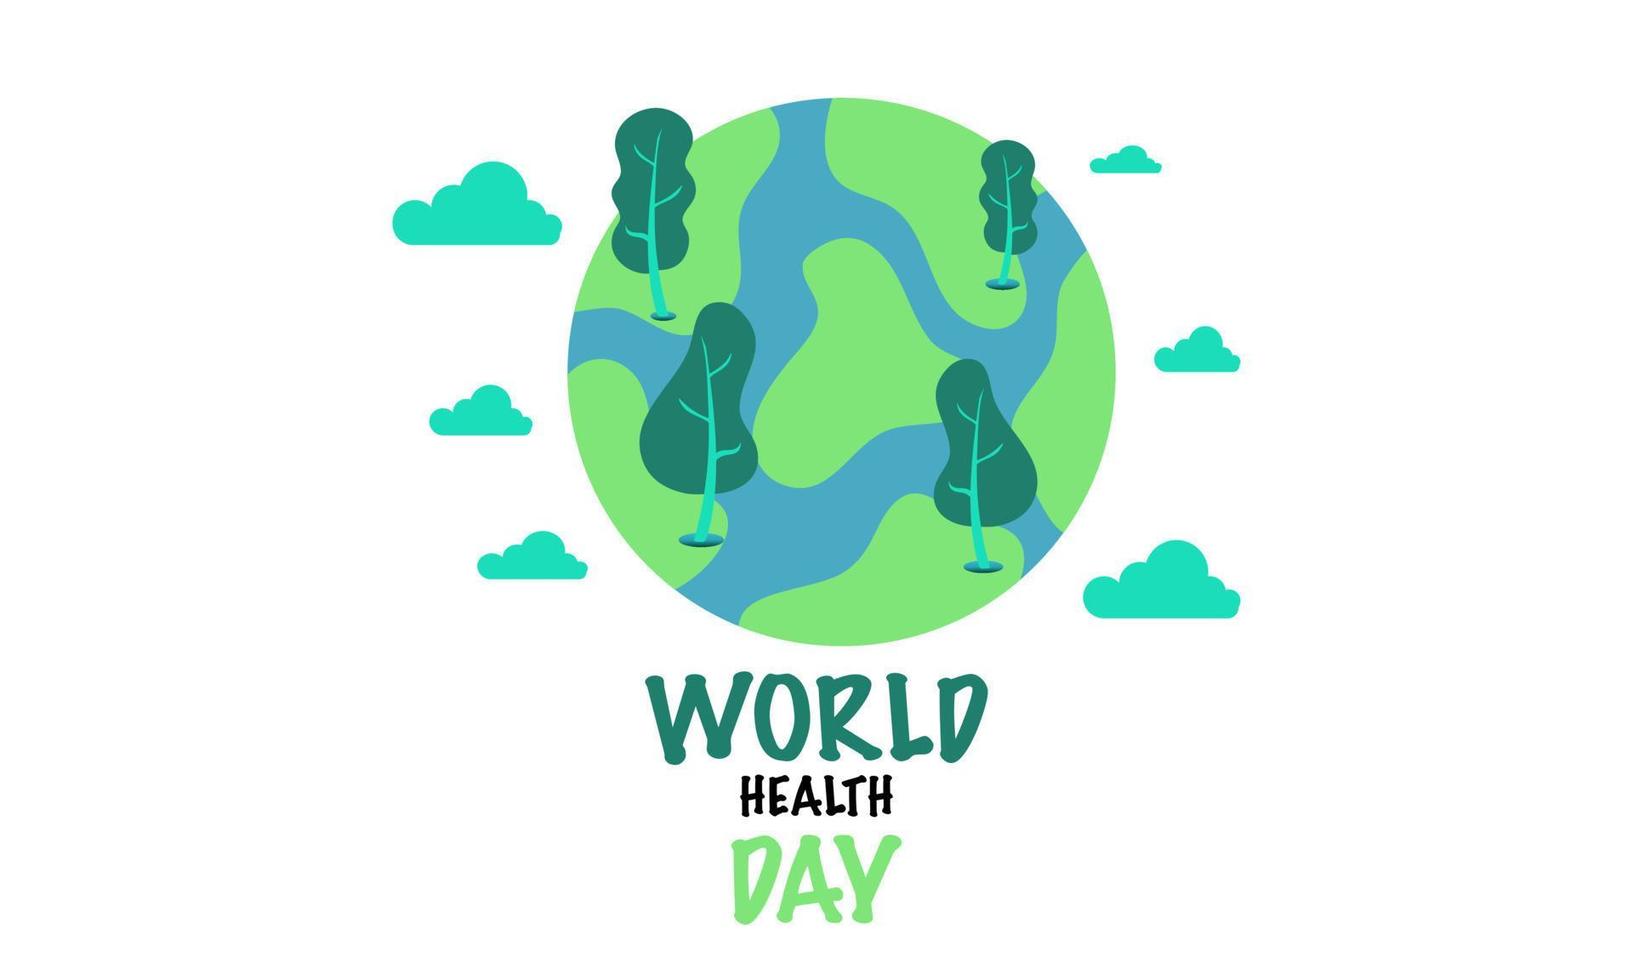 Welt Gesundheit Tag. April 7. Ferien Konzept. Vorlage zum Hintergrund, Banner, Karte, Poster mit Text Inschrift. vektor